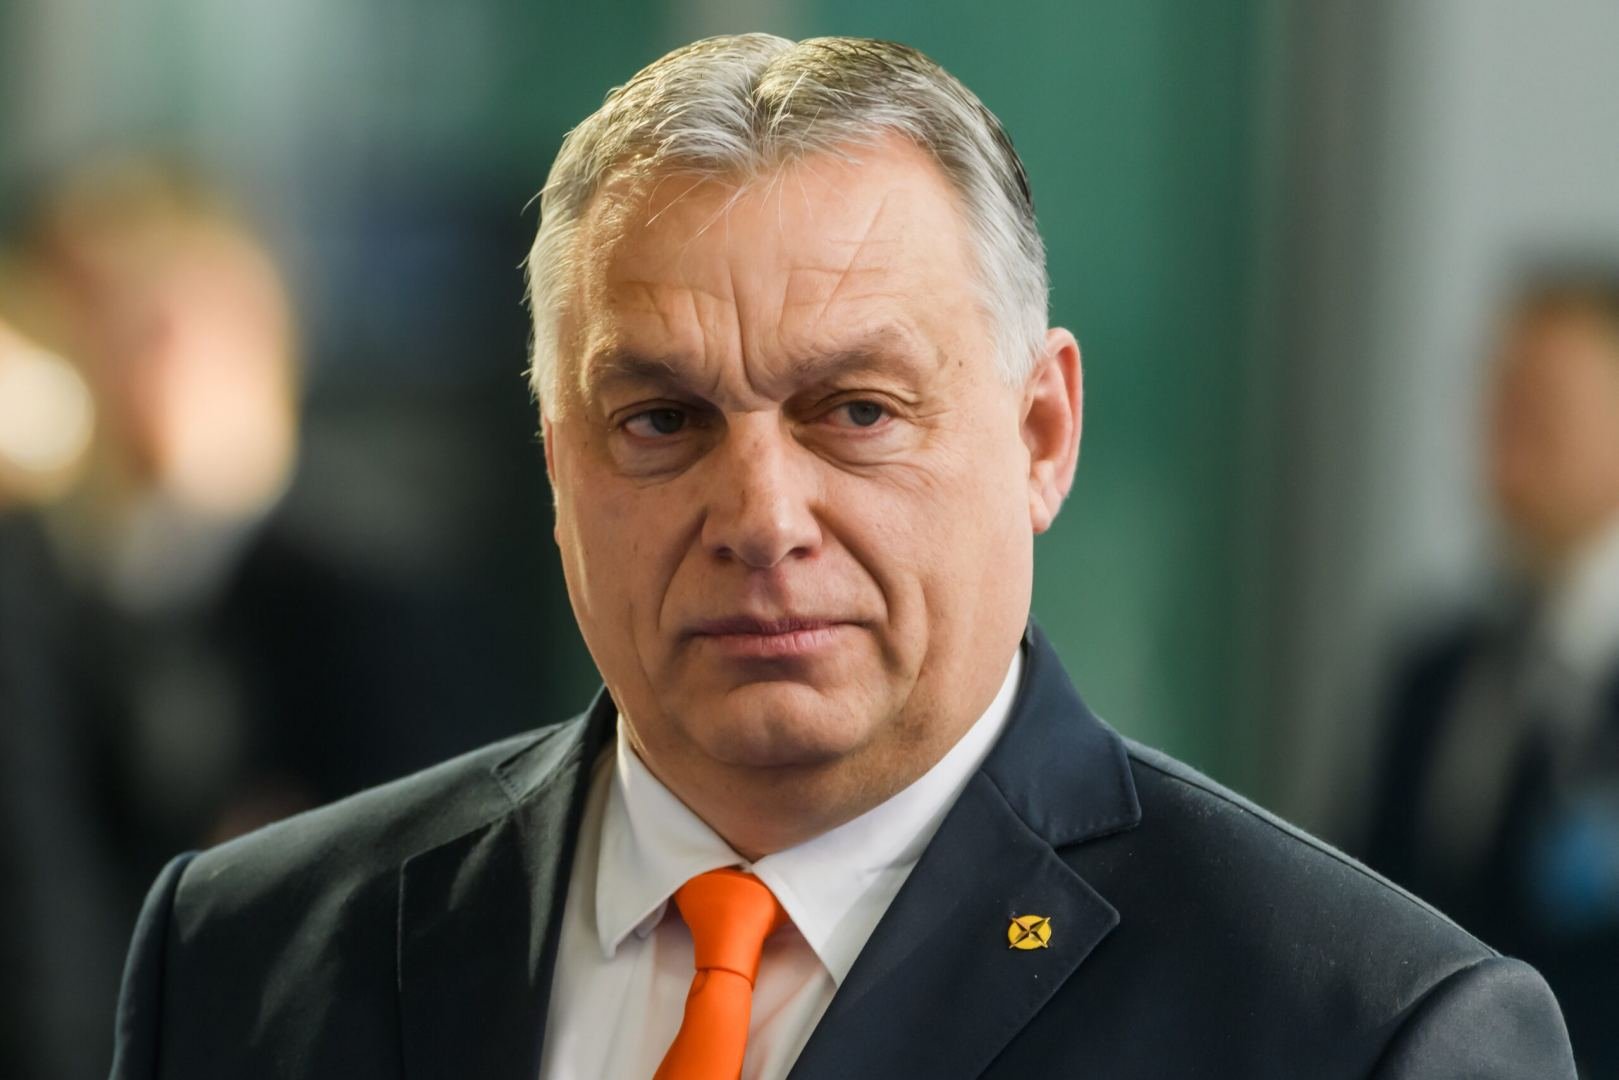 Viktor Orban: Mən Prezident İlham Əliyevdən beynəlxalq arenada daha da uğurlu olmağı öyrənməliyəm